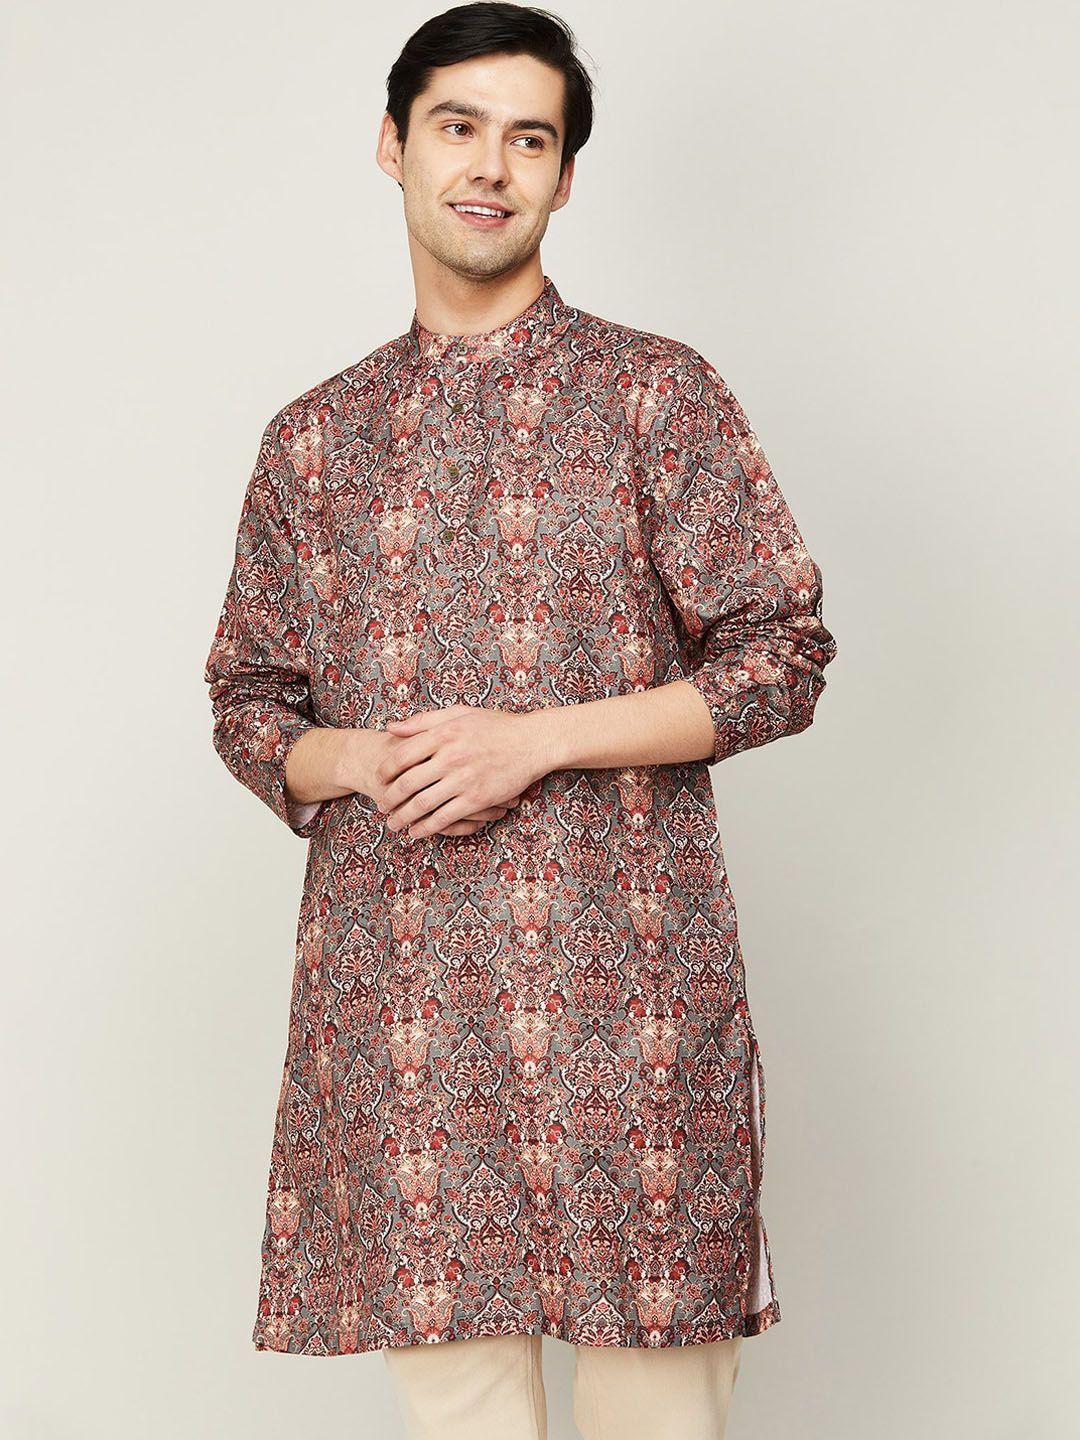 melange by lifestyle men ethnic motifs printed cotton kurta